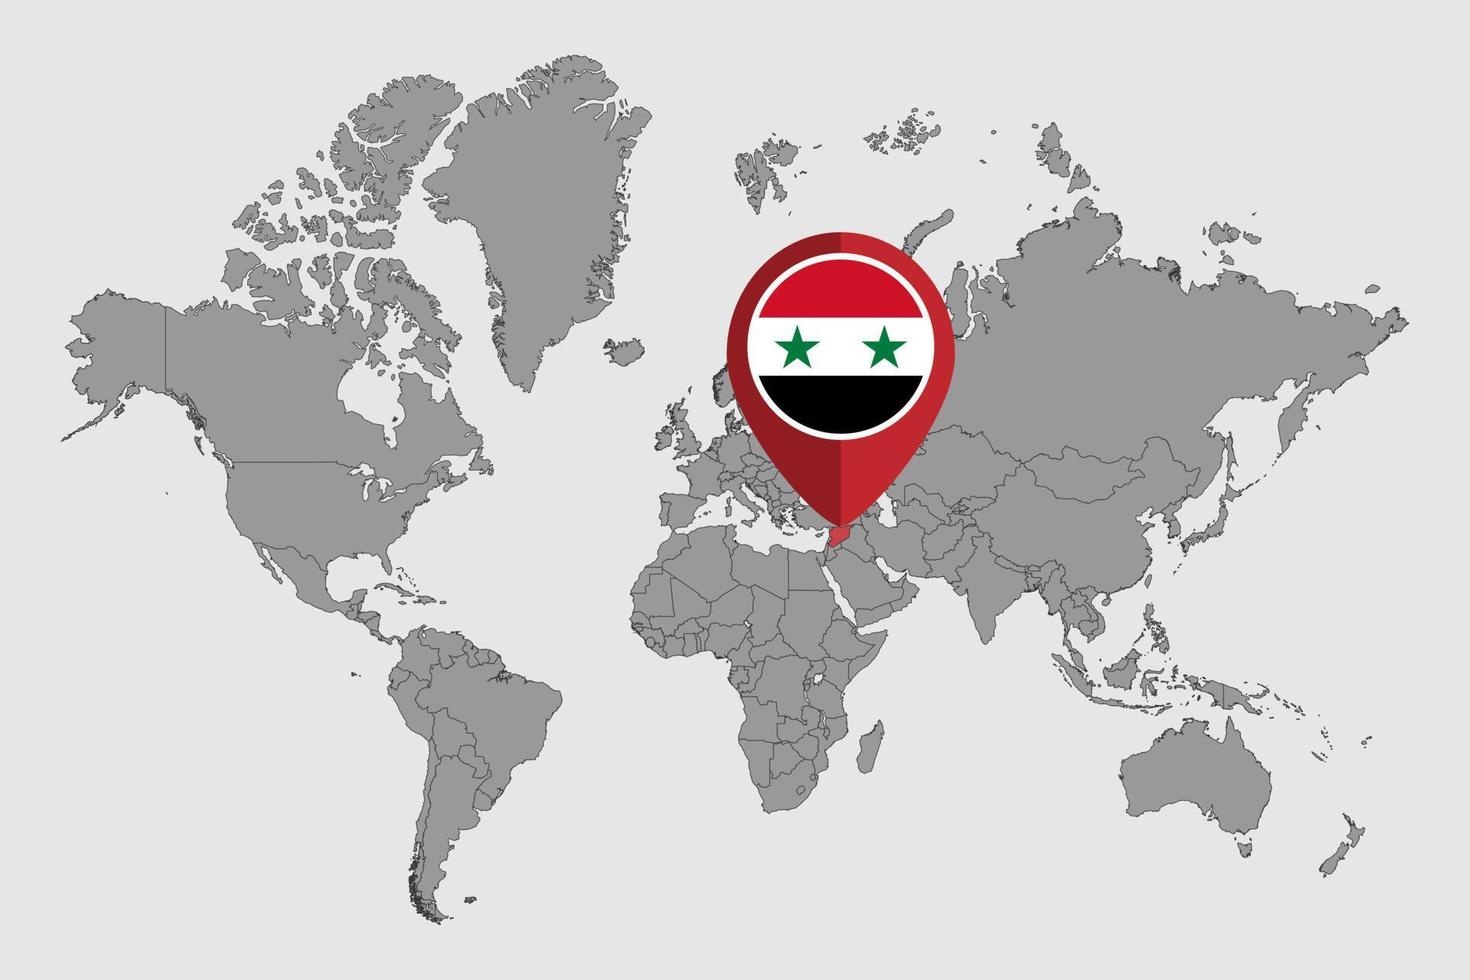 pin mapa con bandera siria en el mapa mundial. ilustración vectorial vector